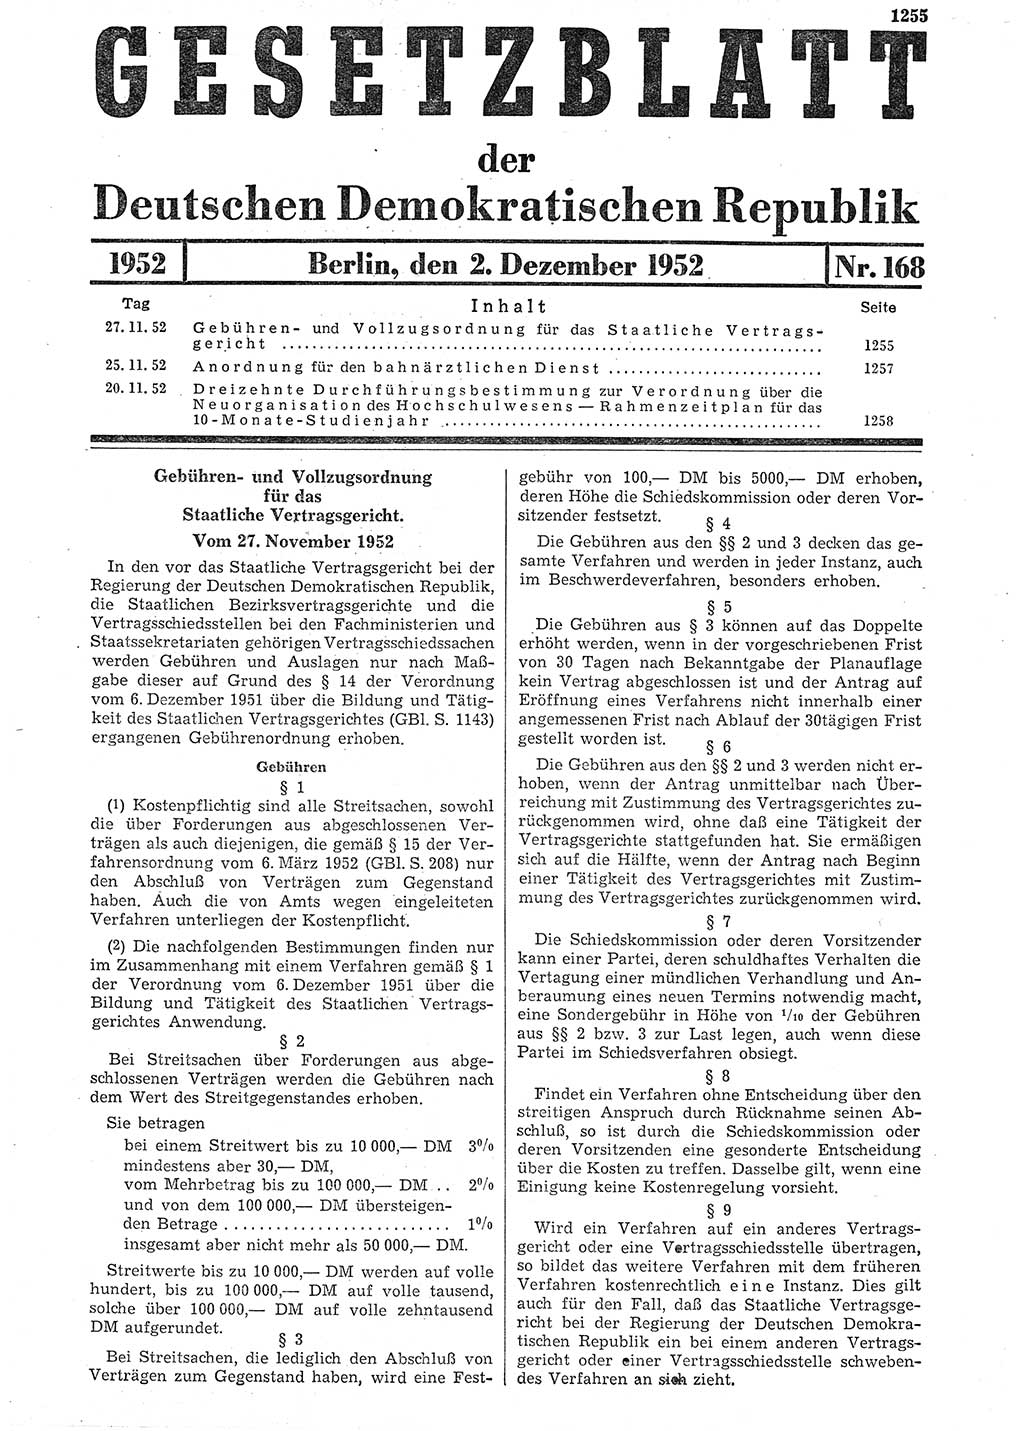 Gesetzblatt (GBl.) der Deutschen Demokratischen Republik (DDR) 1952, Seite 1255 (GBl. DDR 1952, S. 1255)